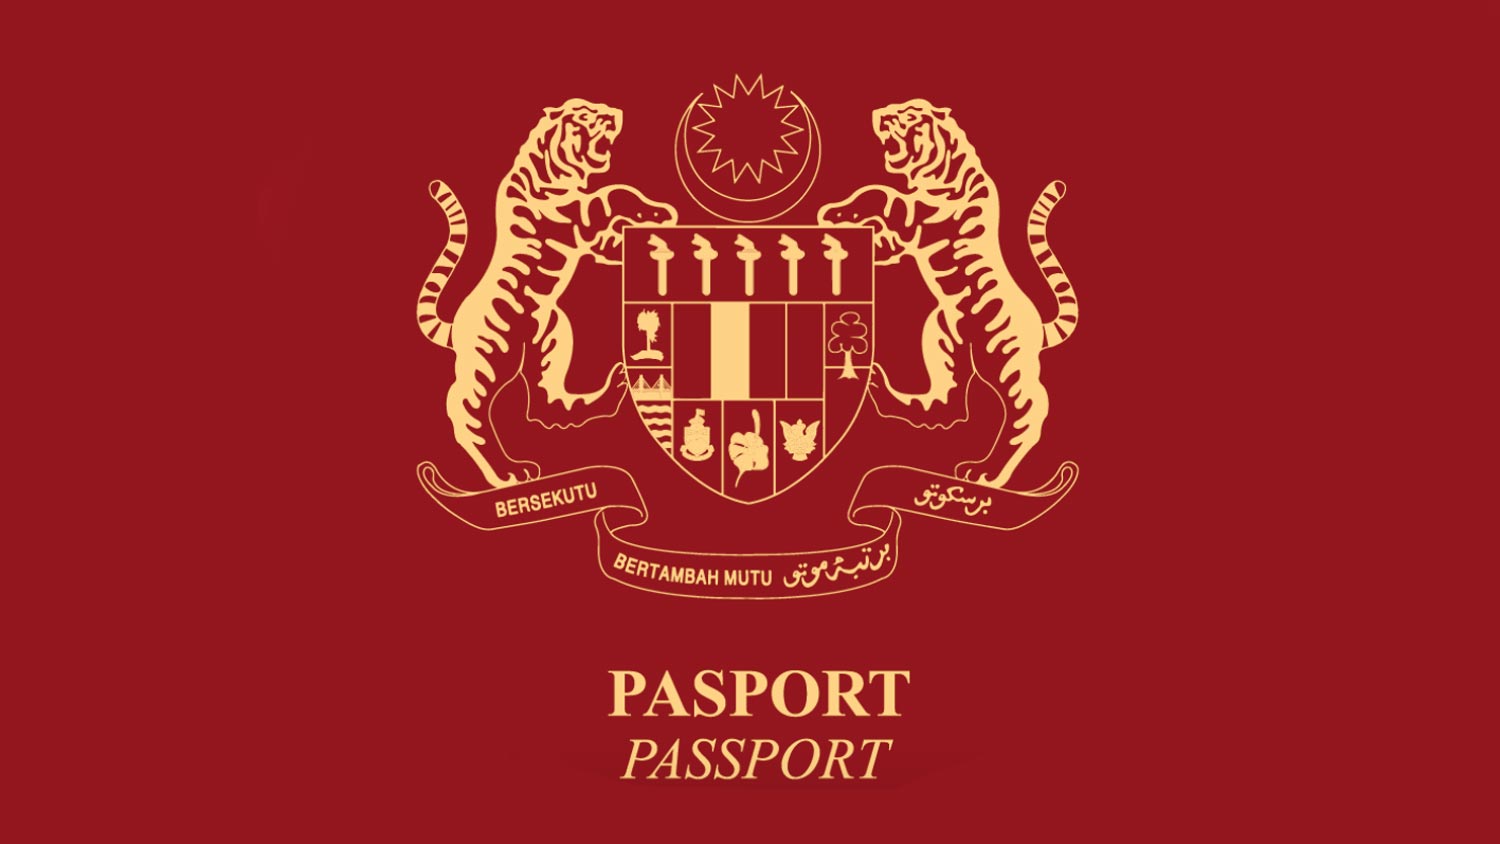 Passport Malaysia Meningkat Ke Tangga 11 Paling Berkuasa, Singapura Di Tangga Teratas